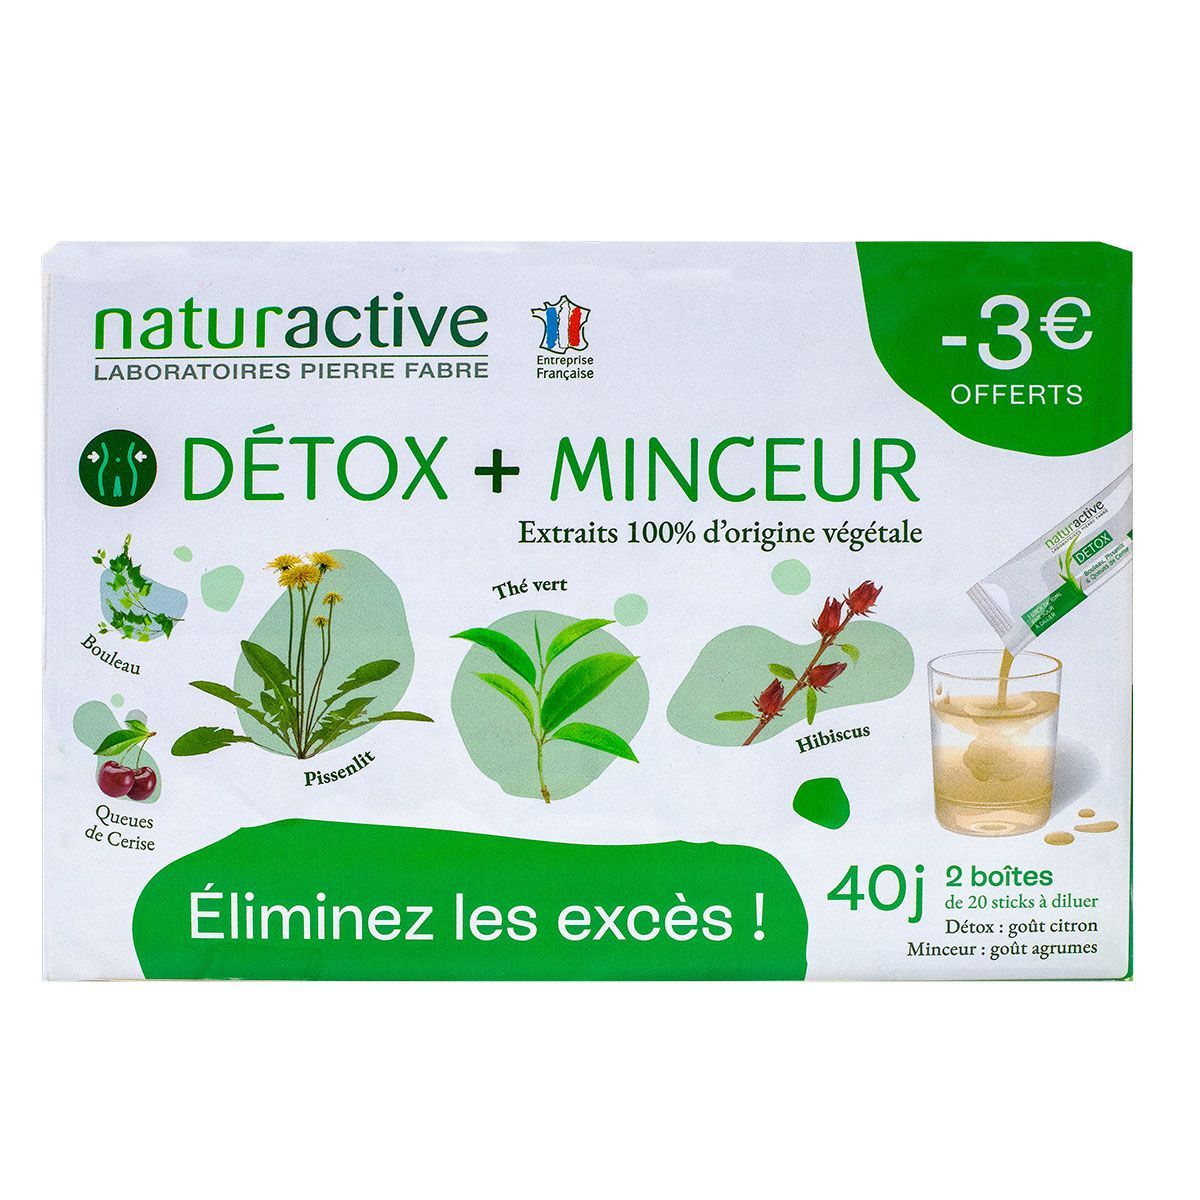 Thé vert Detox Bio - thé vert, maté et citron - cure 30 jours - 200g